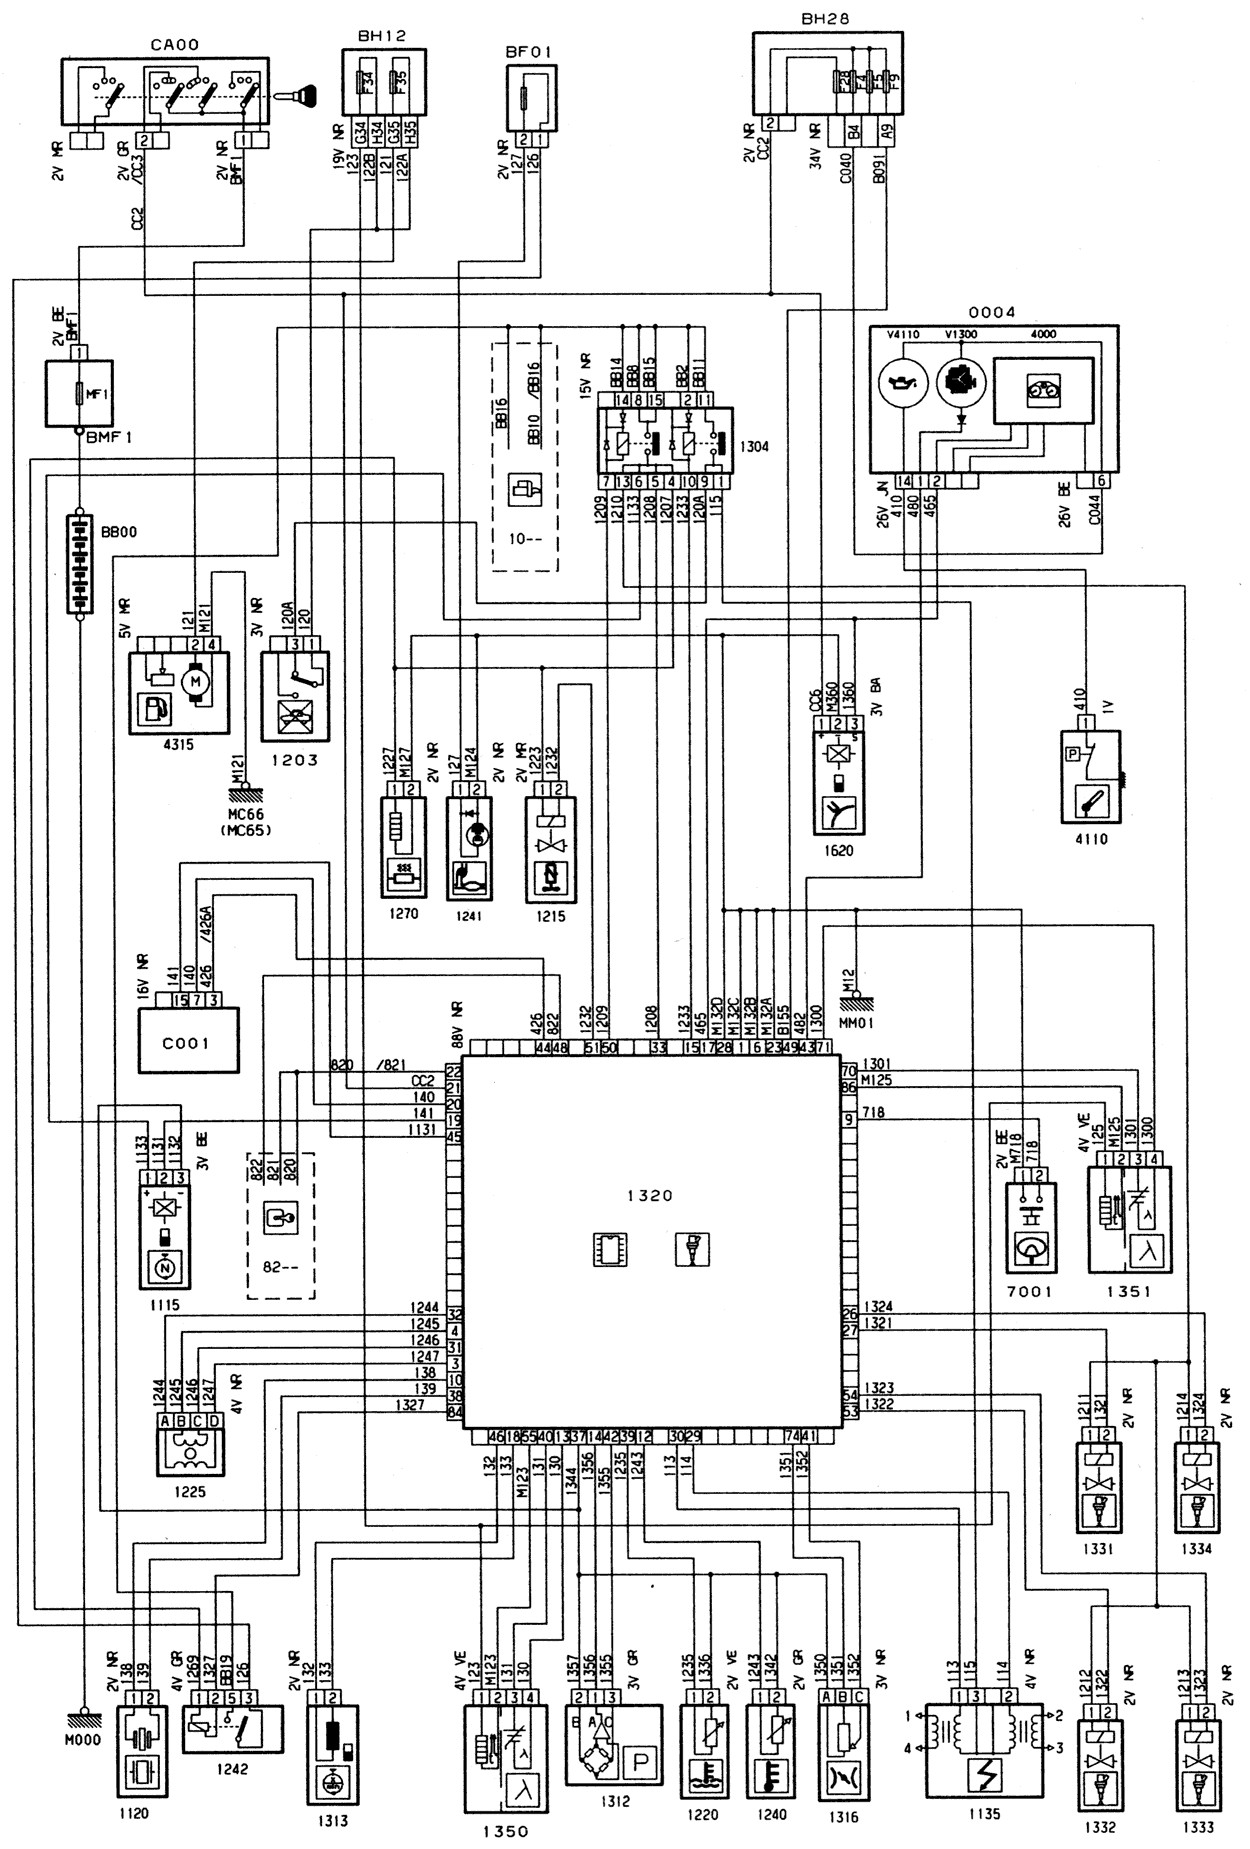 Circuit Diagram Lights In Citroen C3 Schema Electrique Autoradio Citroen C3 Of Circuit Diagram Lights In Citroen C3